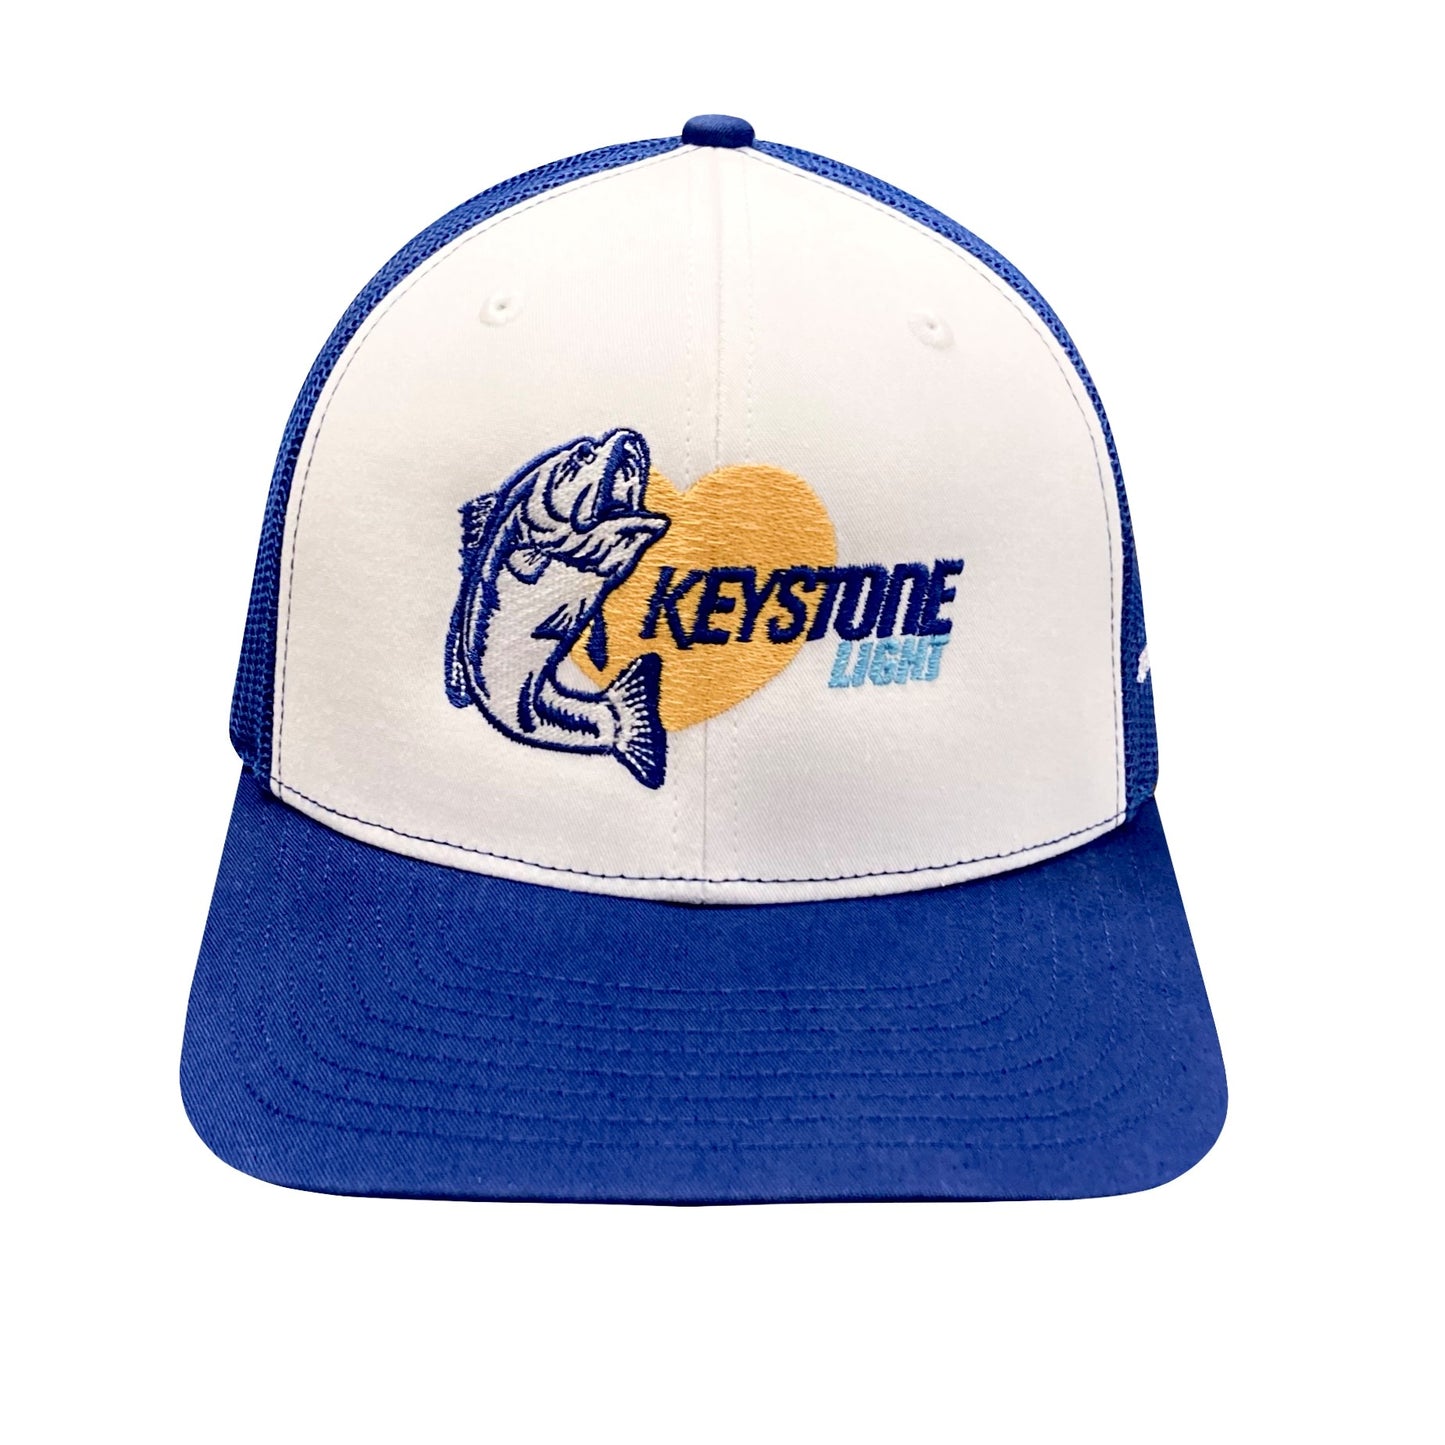 Keystone Light Fish Pic Trucker Hat